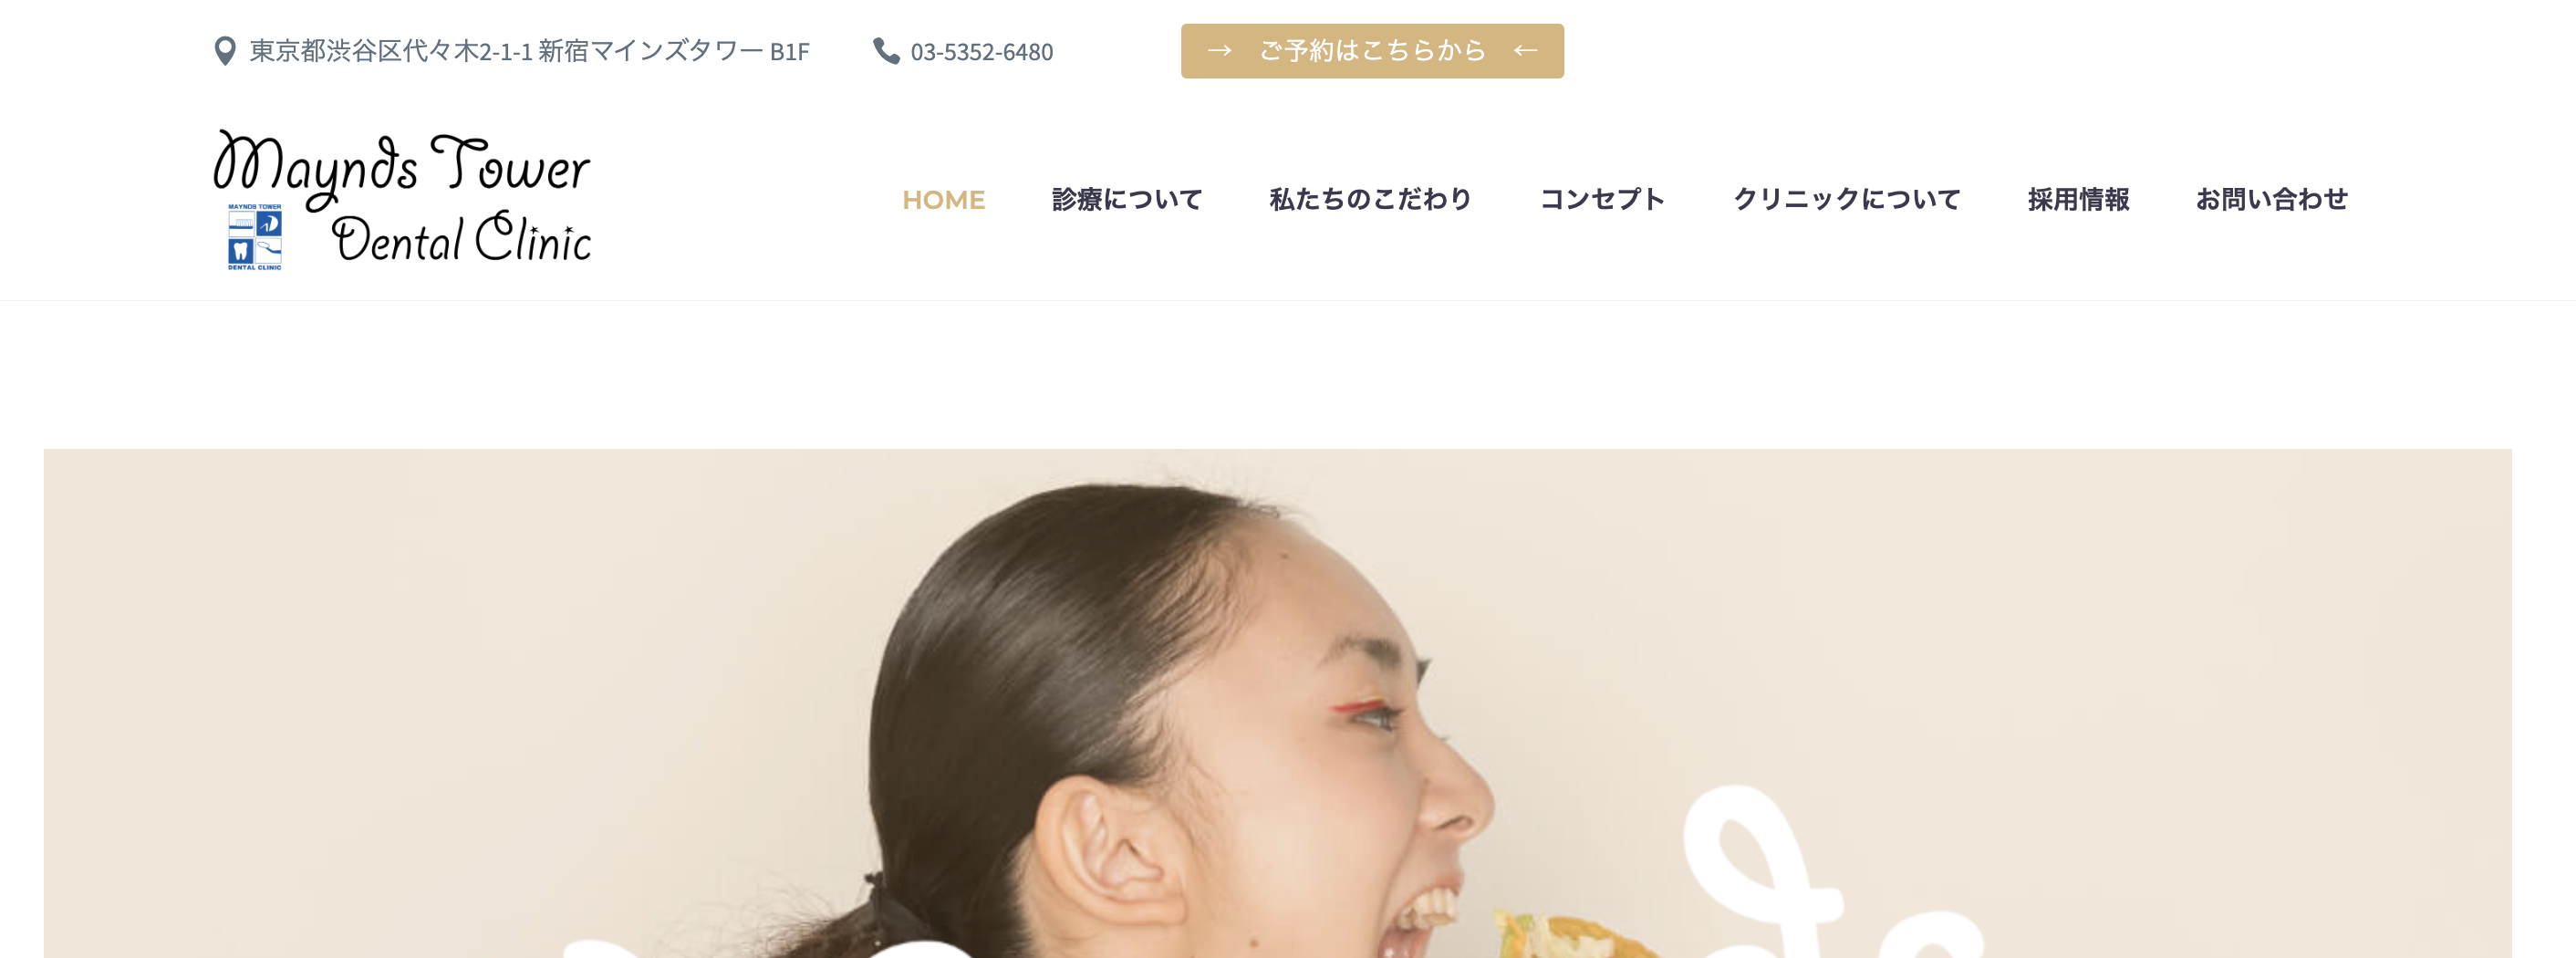 渋谷区のインプラント治療におすすめの歯科クリニック5選 マインズタワーデンタルクリニック